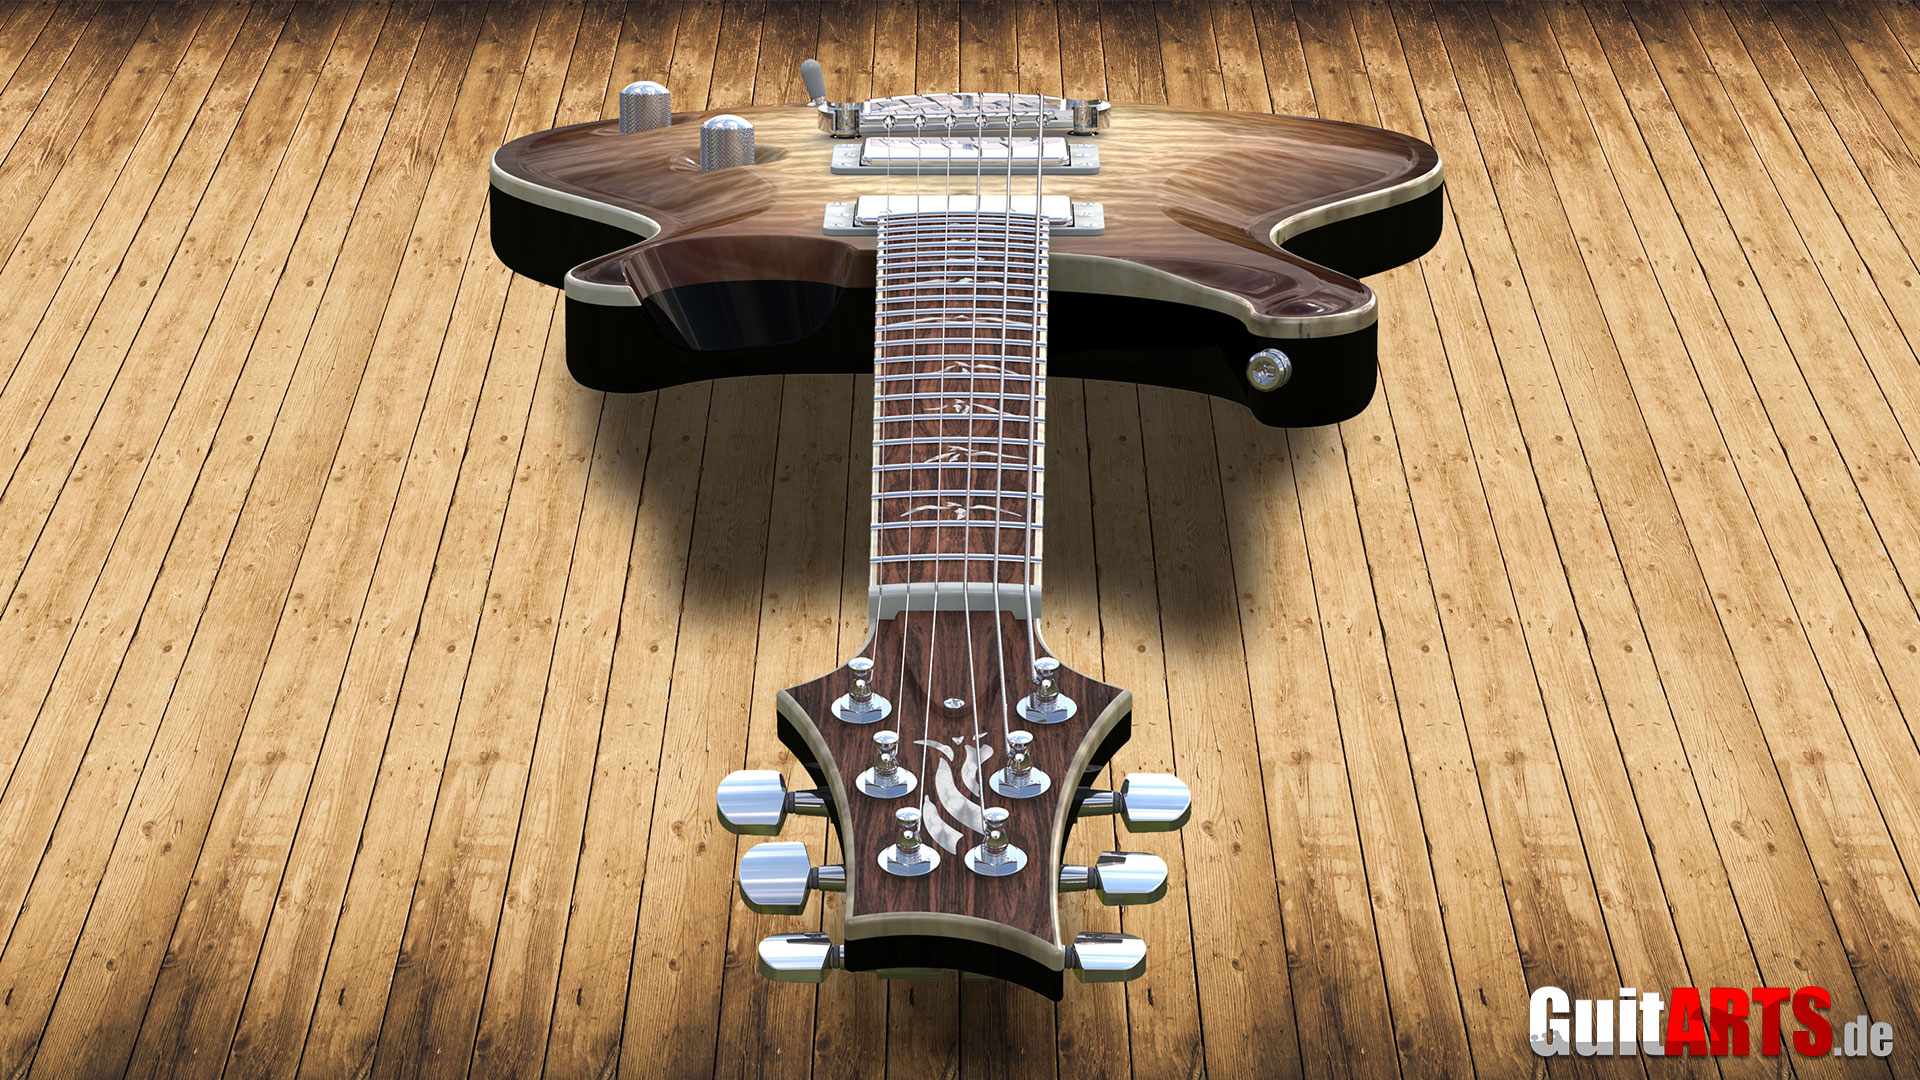 NX-rendering-guitar.jpg